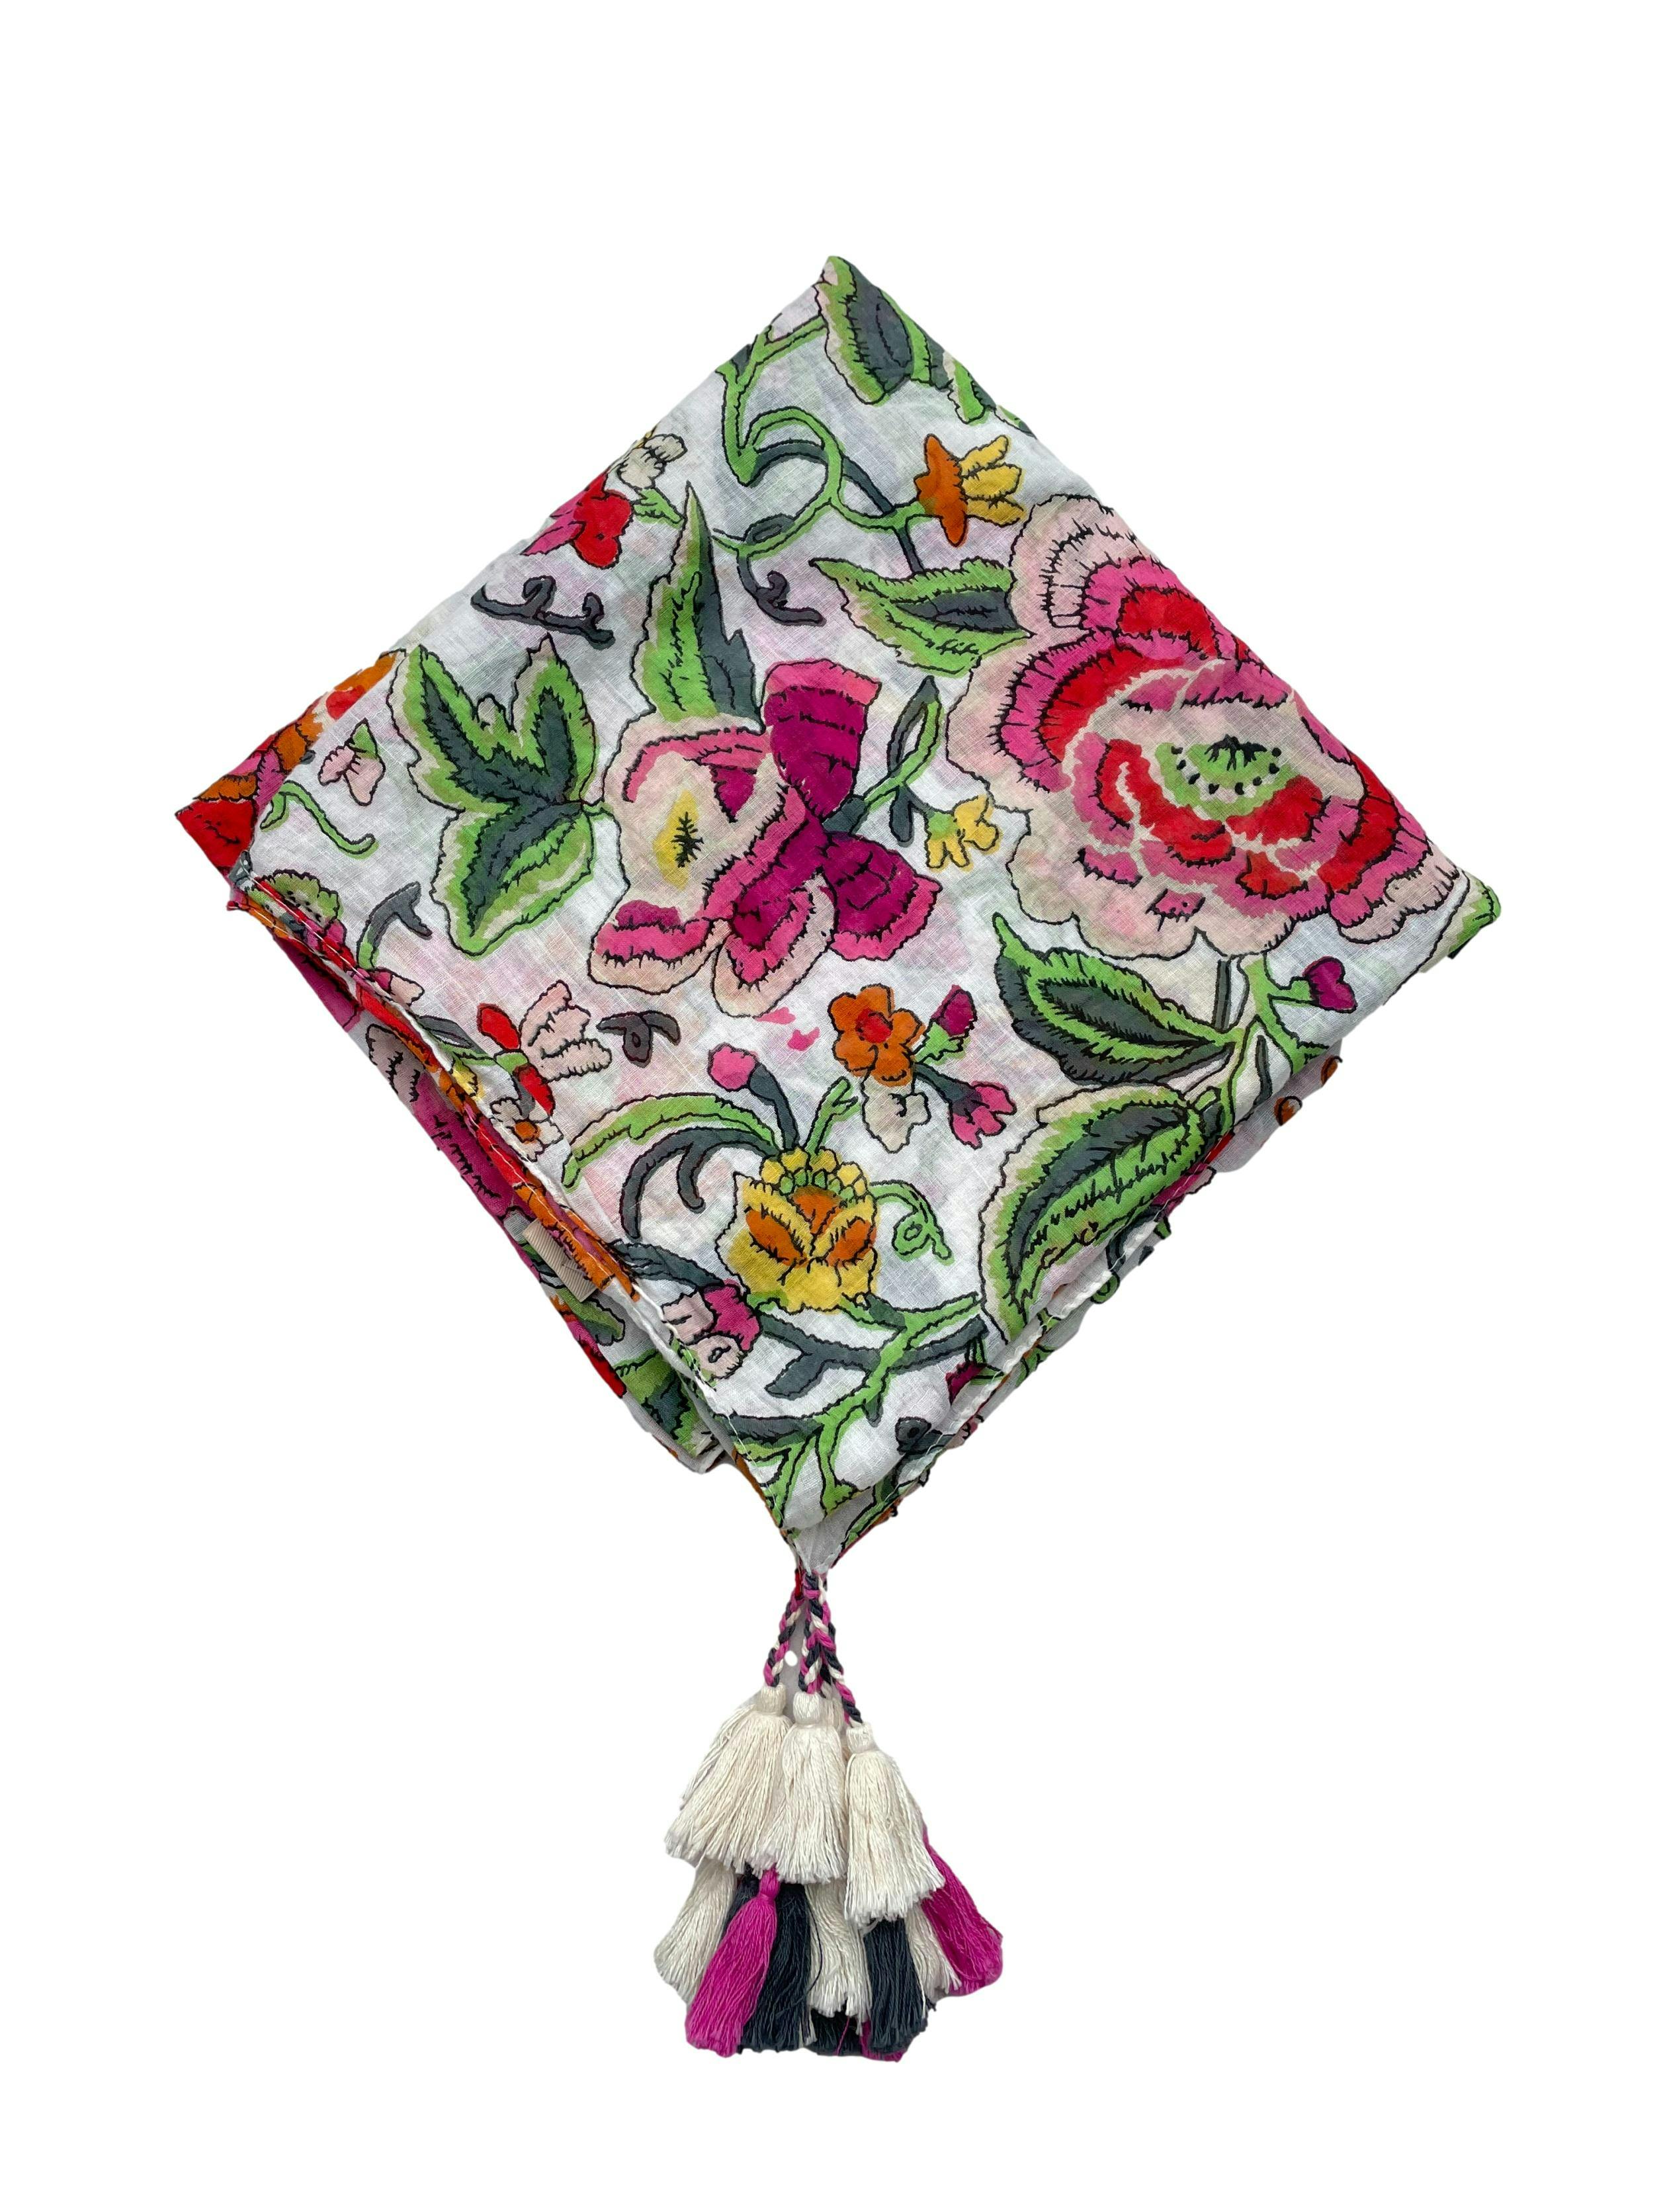 Pañuelo Tatienne floreado en tonos rosas y verdes 100% algodón  con borlas en las esquinas. Medidas 100cm x 100cm.